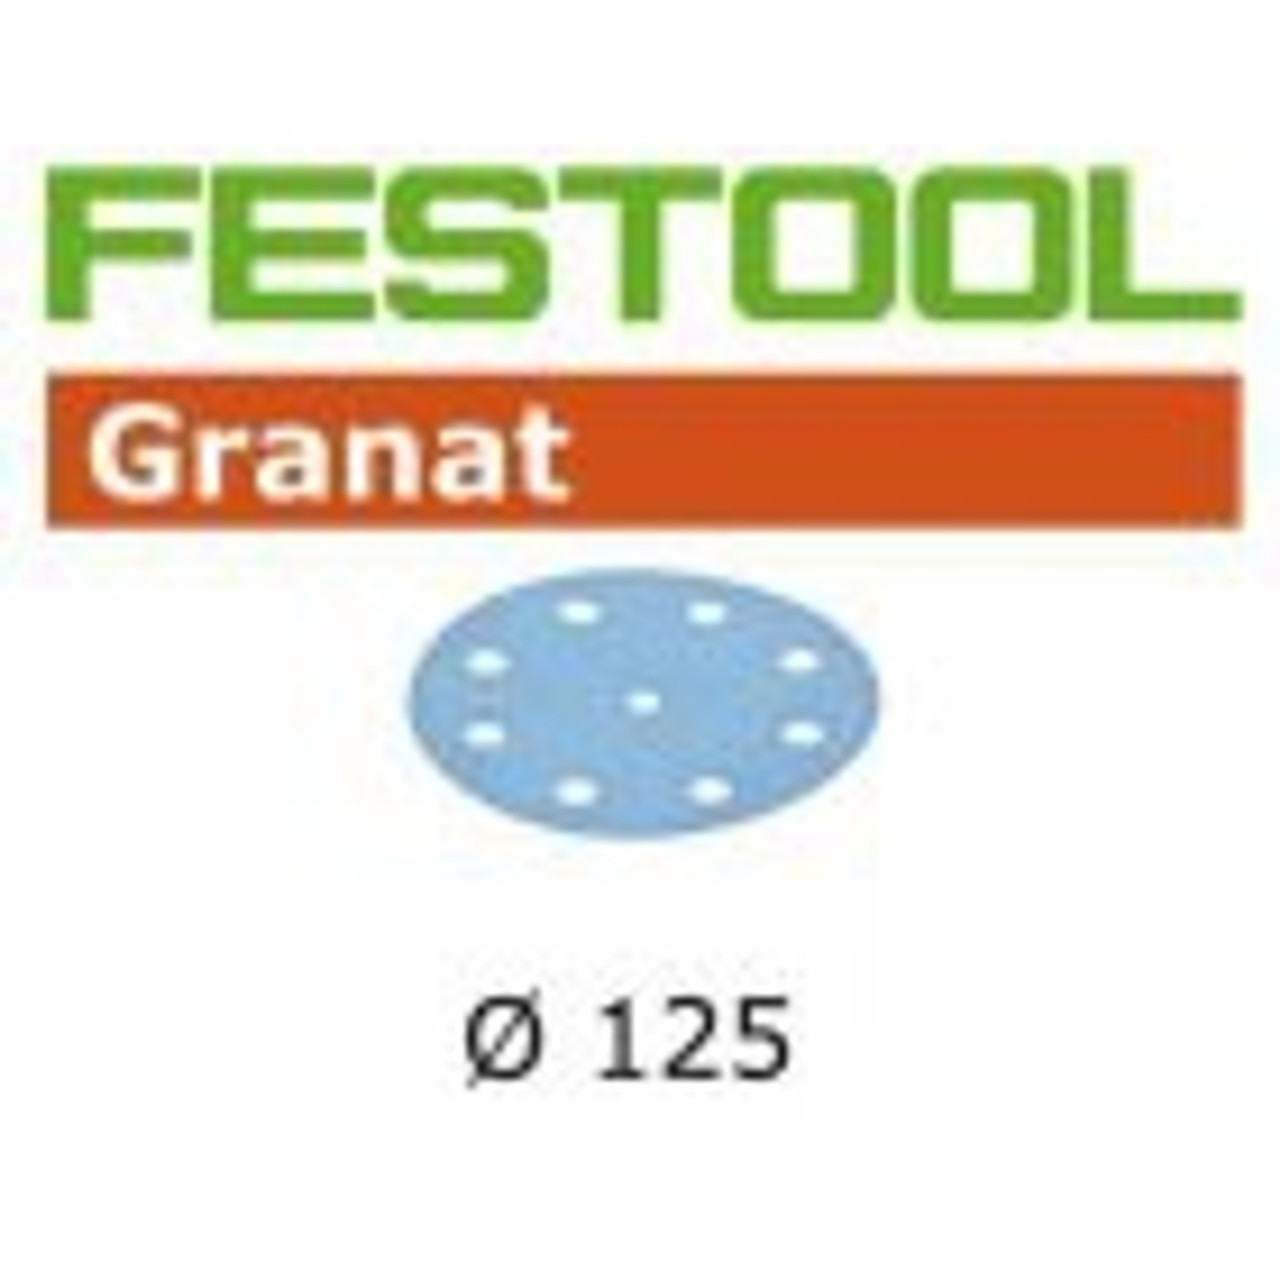 Festool D125 Granat Discs